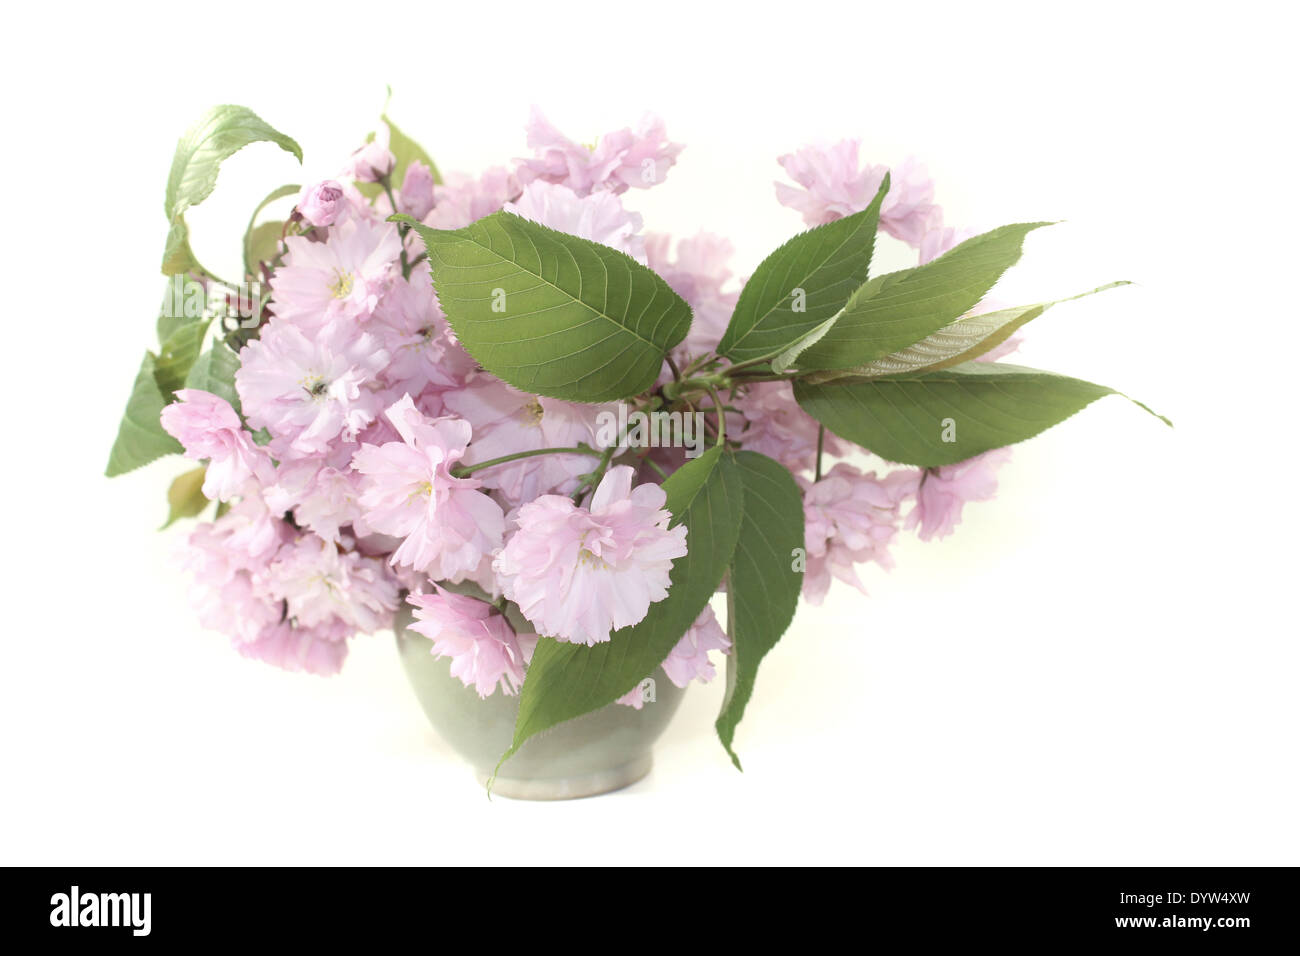 Les fleurs de cerisier de l'Asie de l'est dans un vase sur un fond clair Banque D'Images